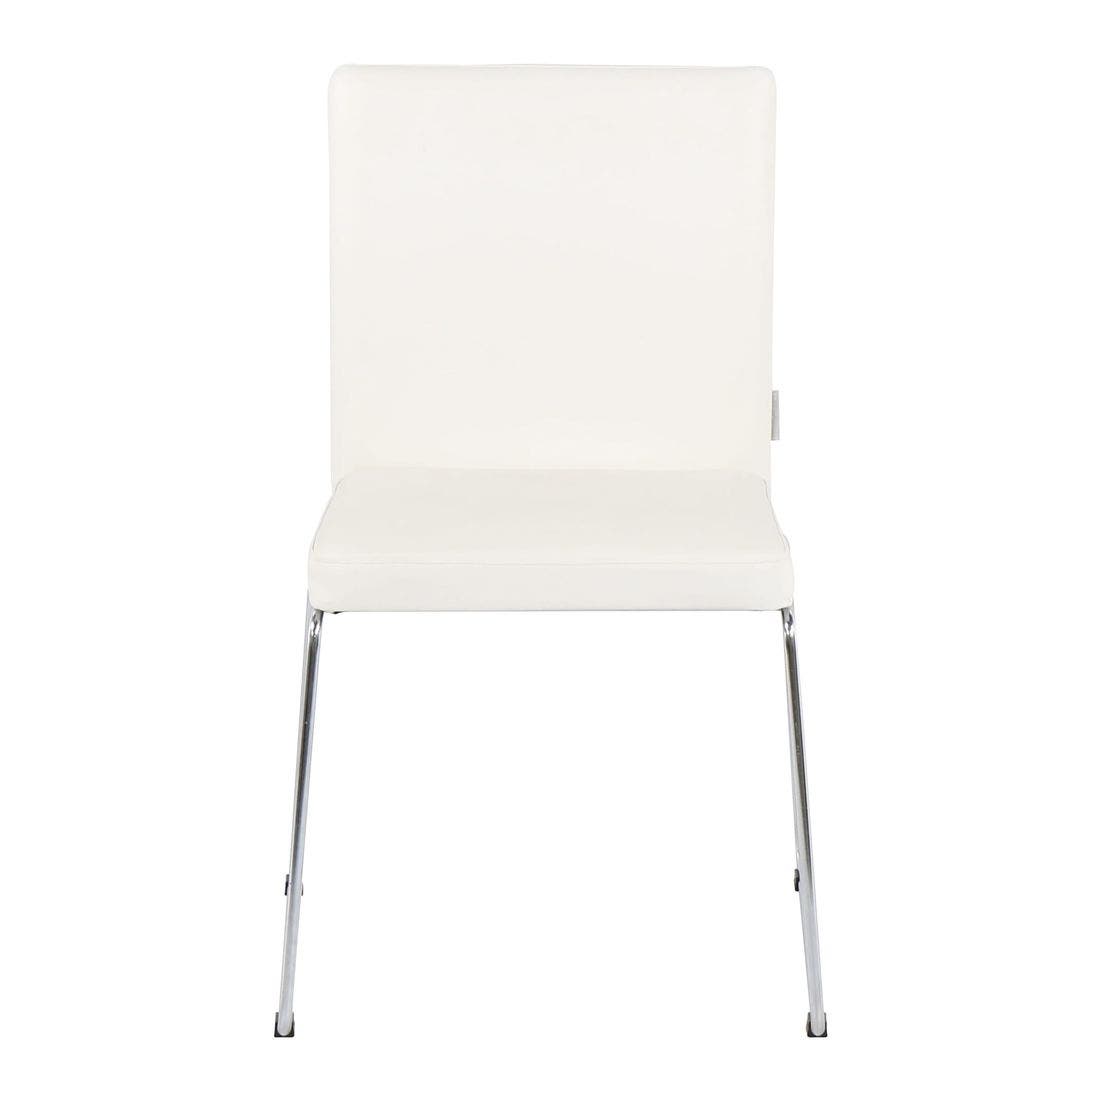 เก้าอี้ รุ่น Motto สีขาว-05